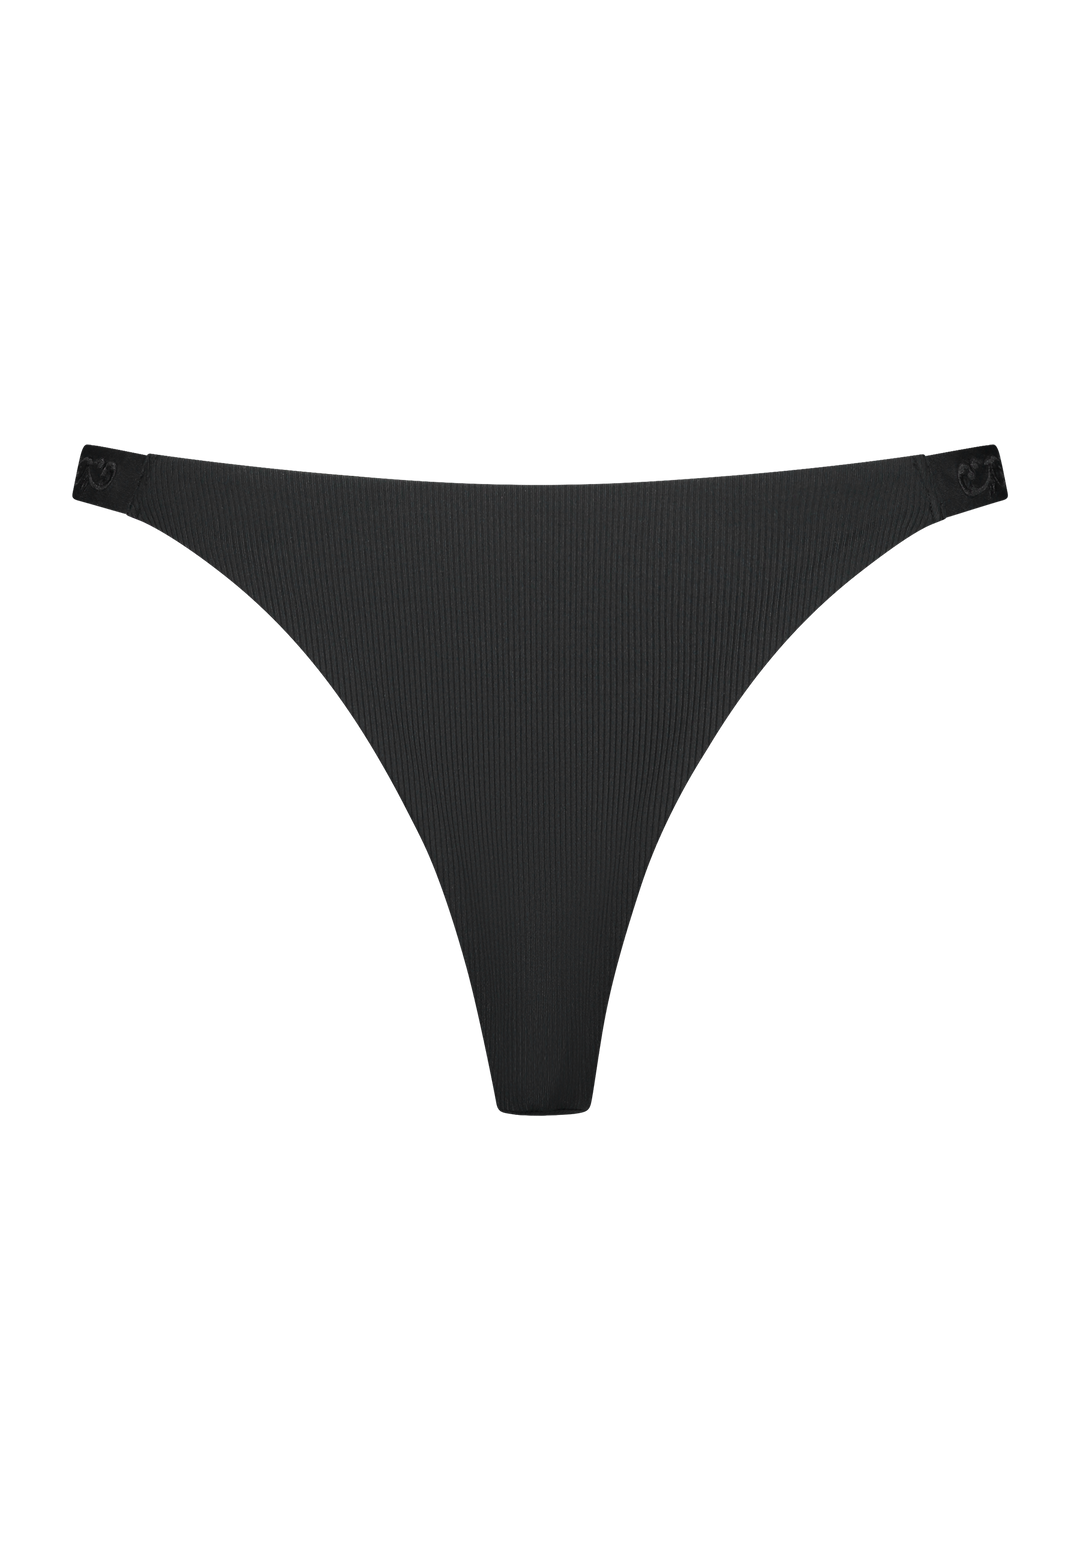 Bikini bottom Brazilian tanga in black with rib fabric and embroidery, product back